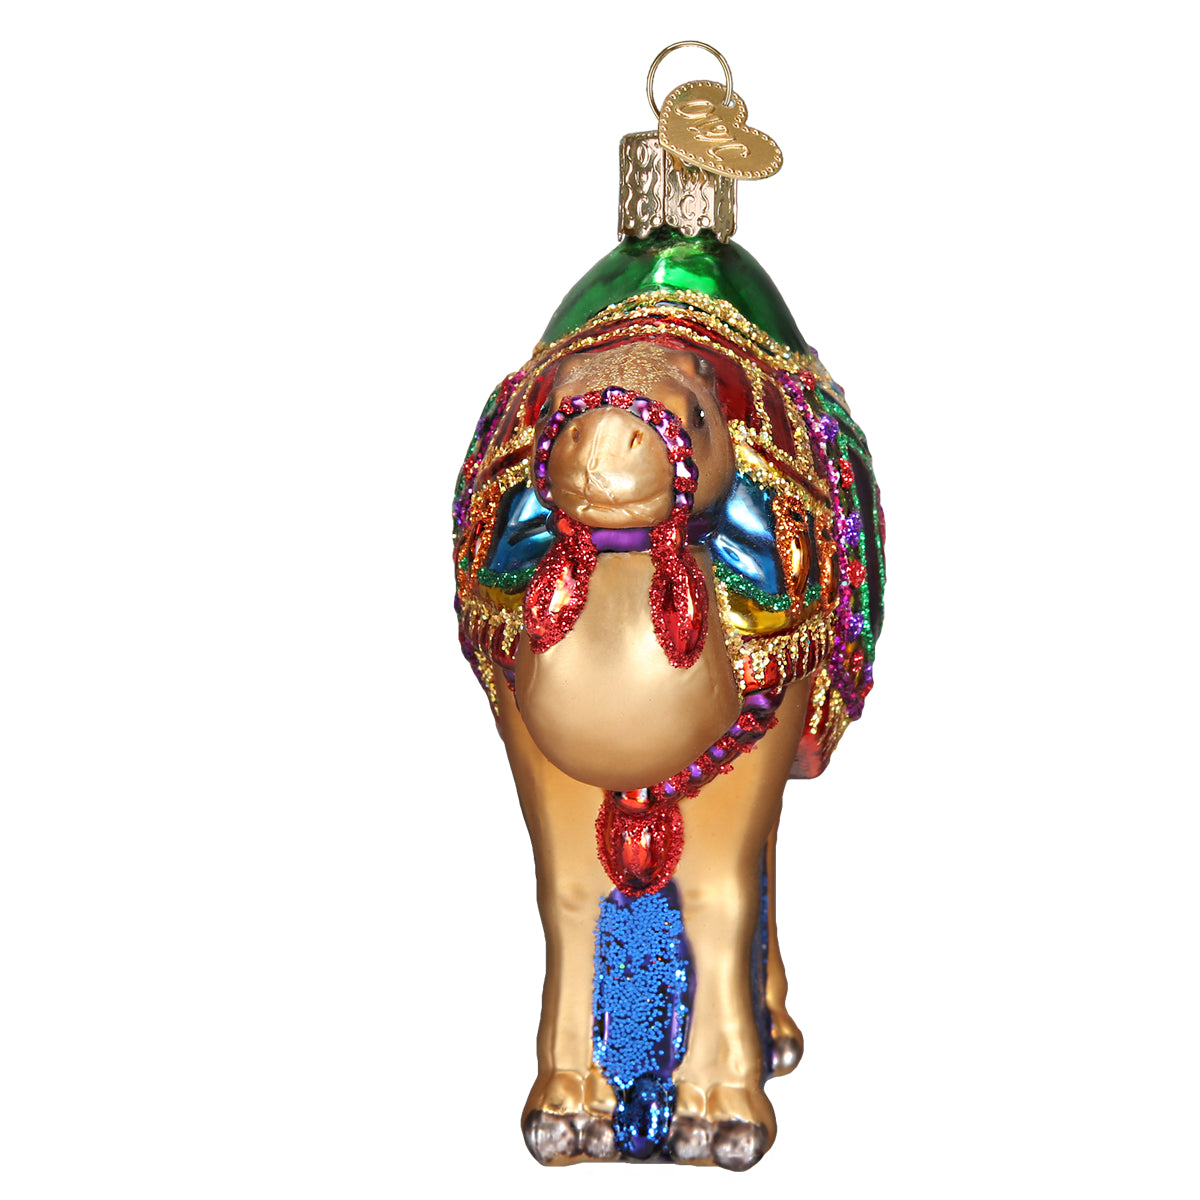 Magi's Camel Ornament